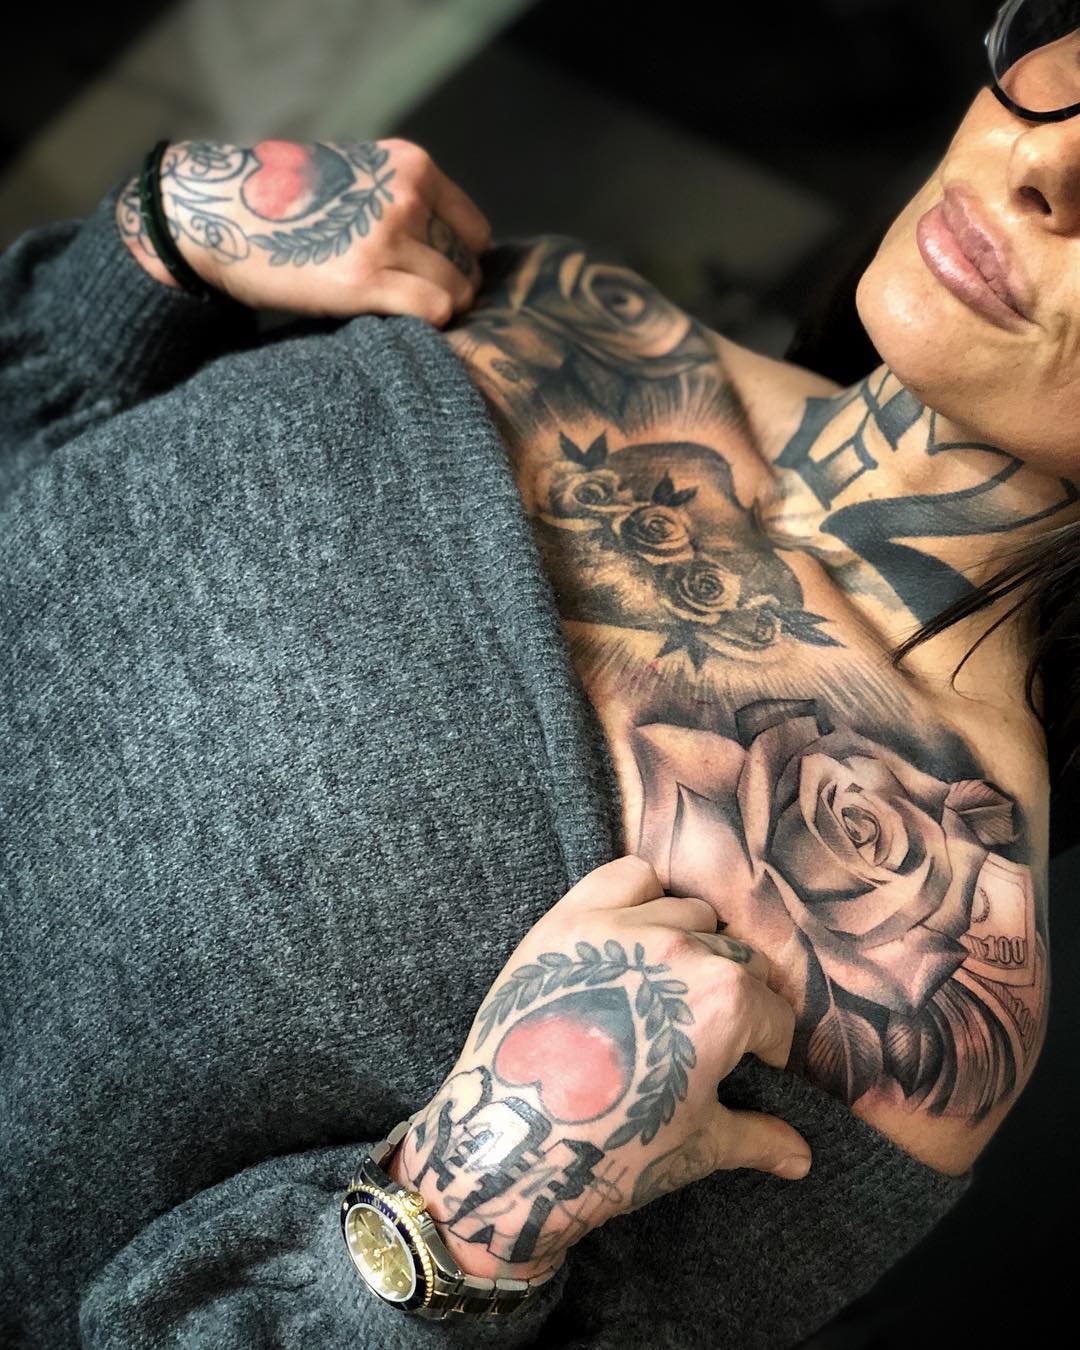 tatuaggio chicano petto by @antoniomackotodisco 4 1